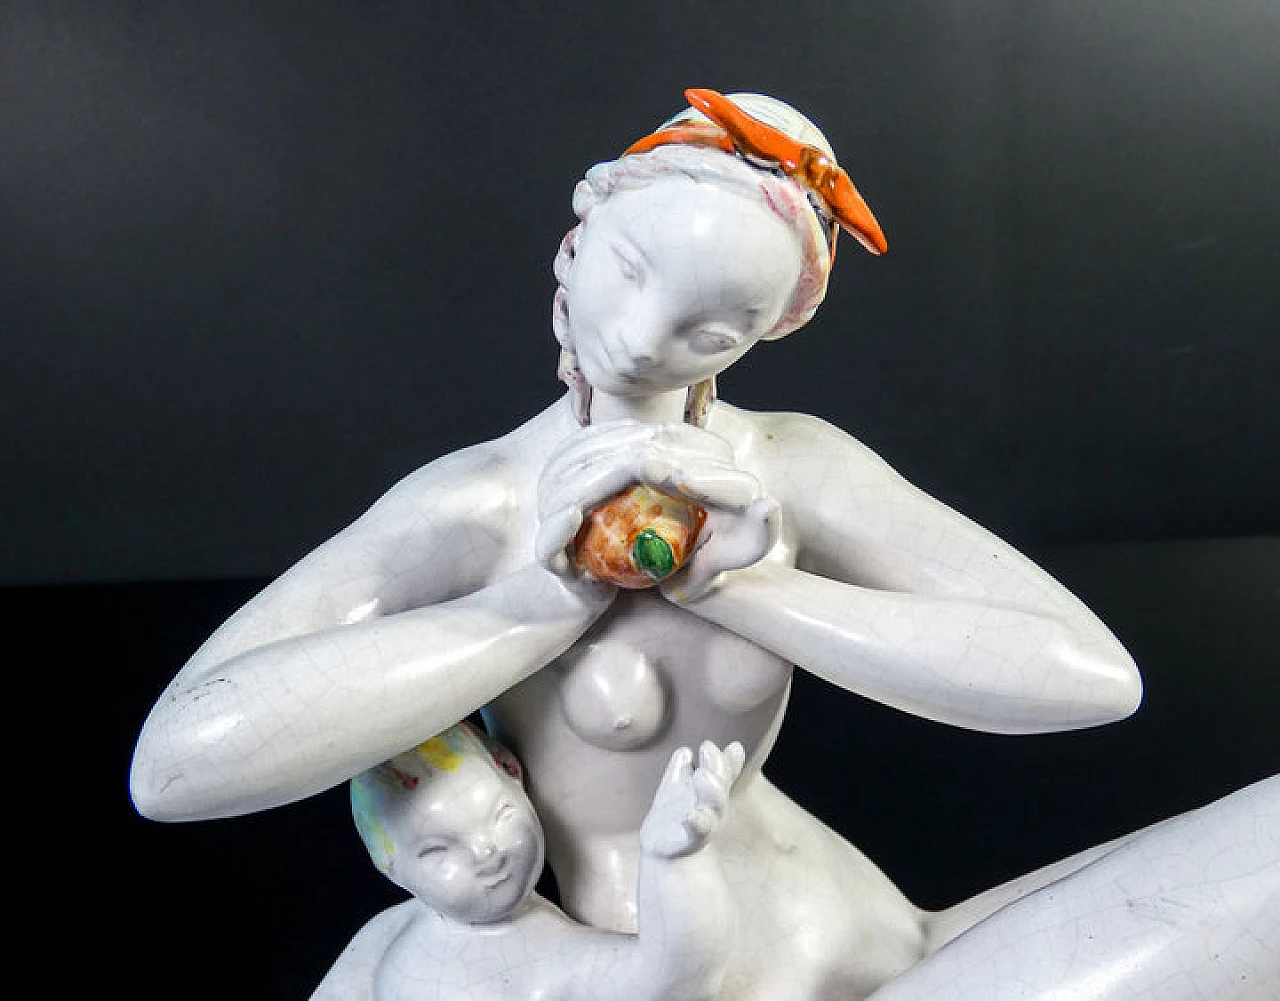 Eugenio Pattarino, female nude with child, ceramic sculpture, 1920s 2